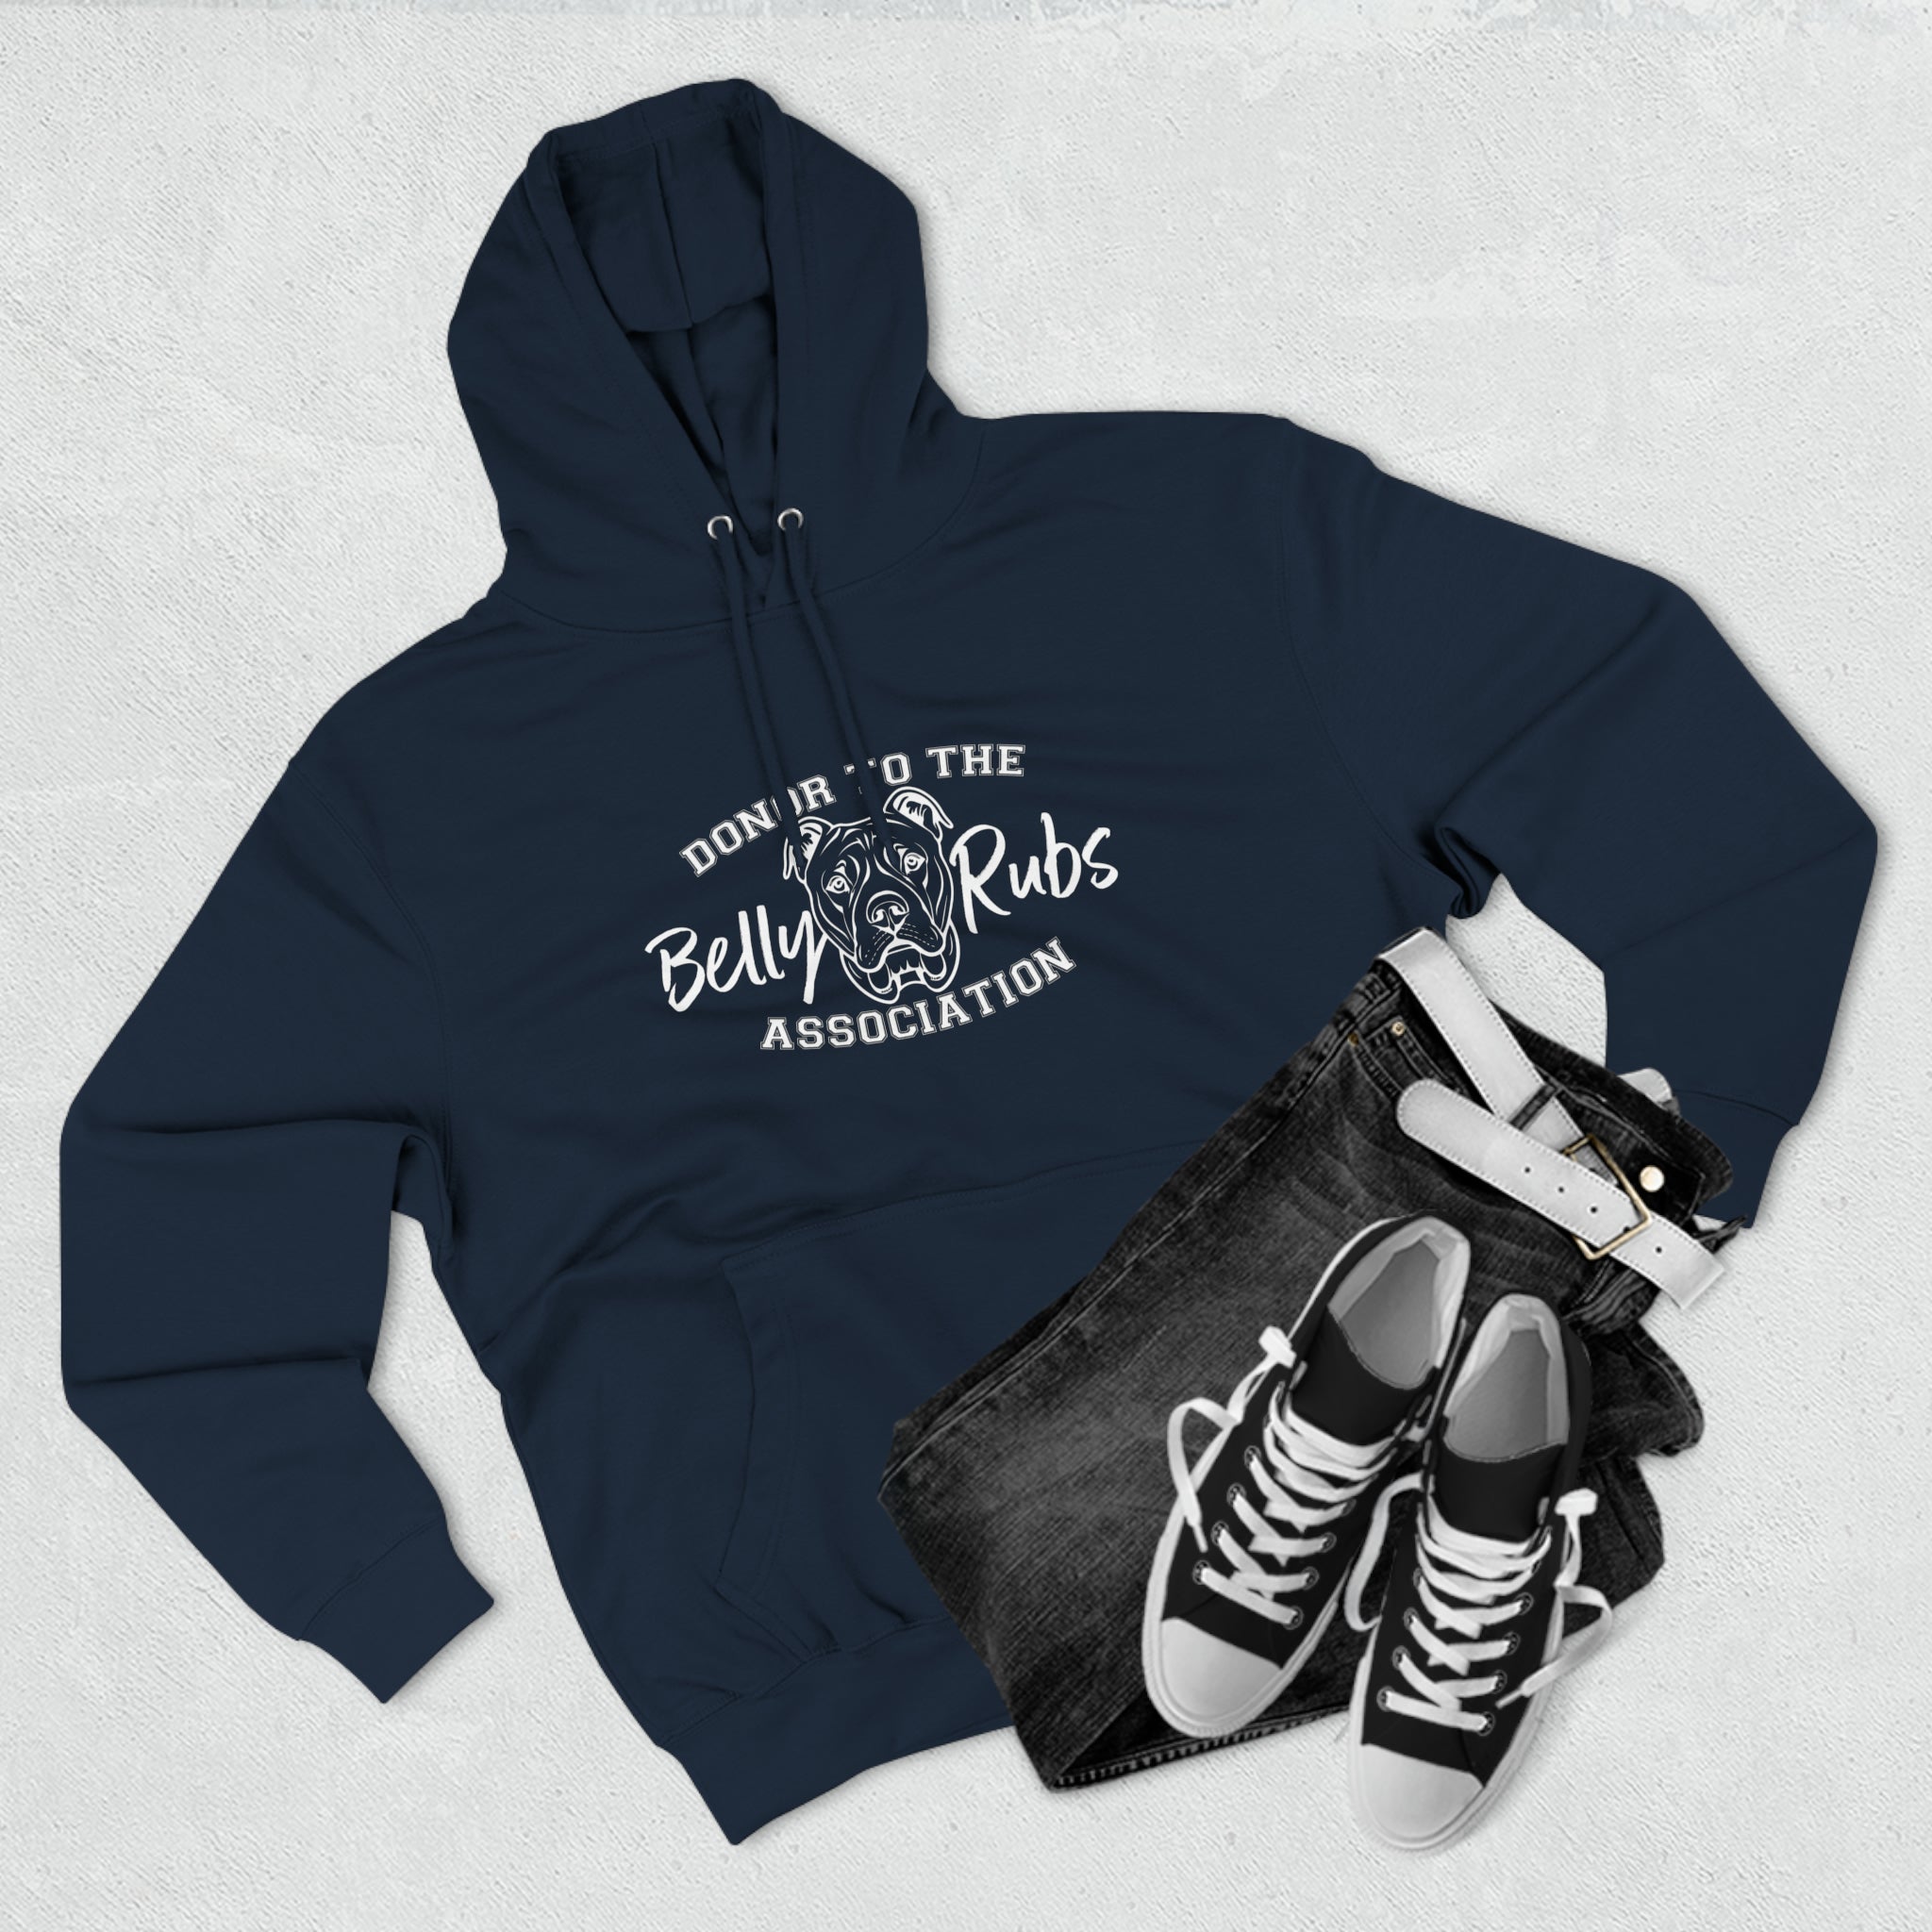 Belly Rub Association - hoodie